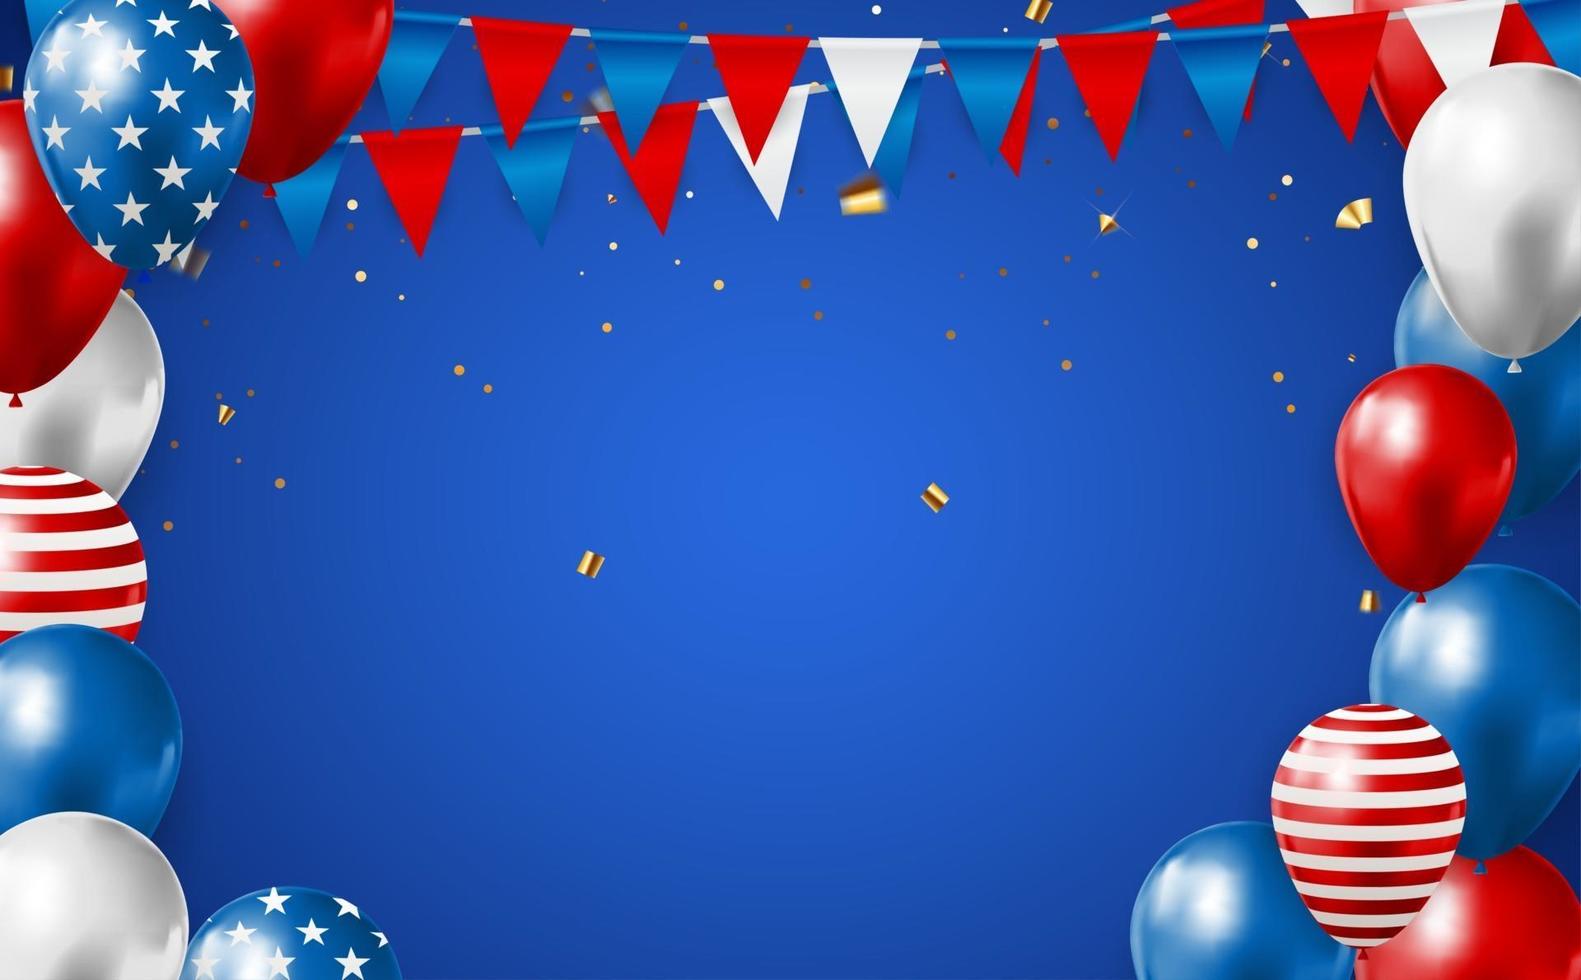 abstracte lege usa vakantie partij achtergrond met ballonnen in de kleur van de Amerikaanse vlag. kan worden gebruikt als poster, wenskaart. vector illustratie